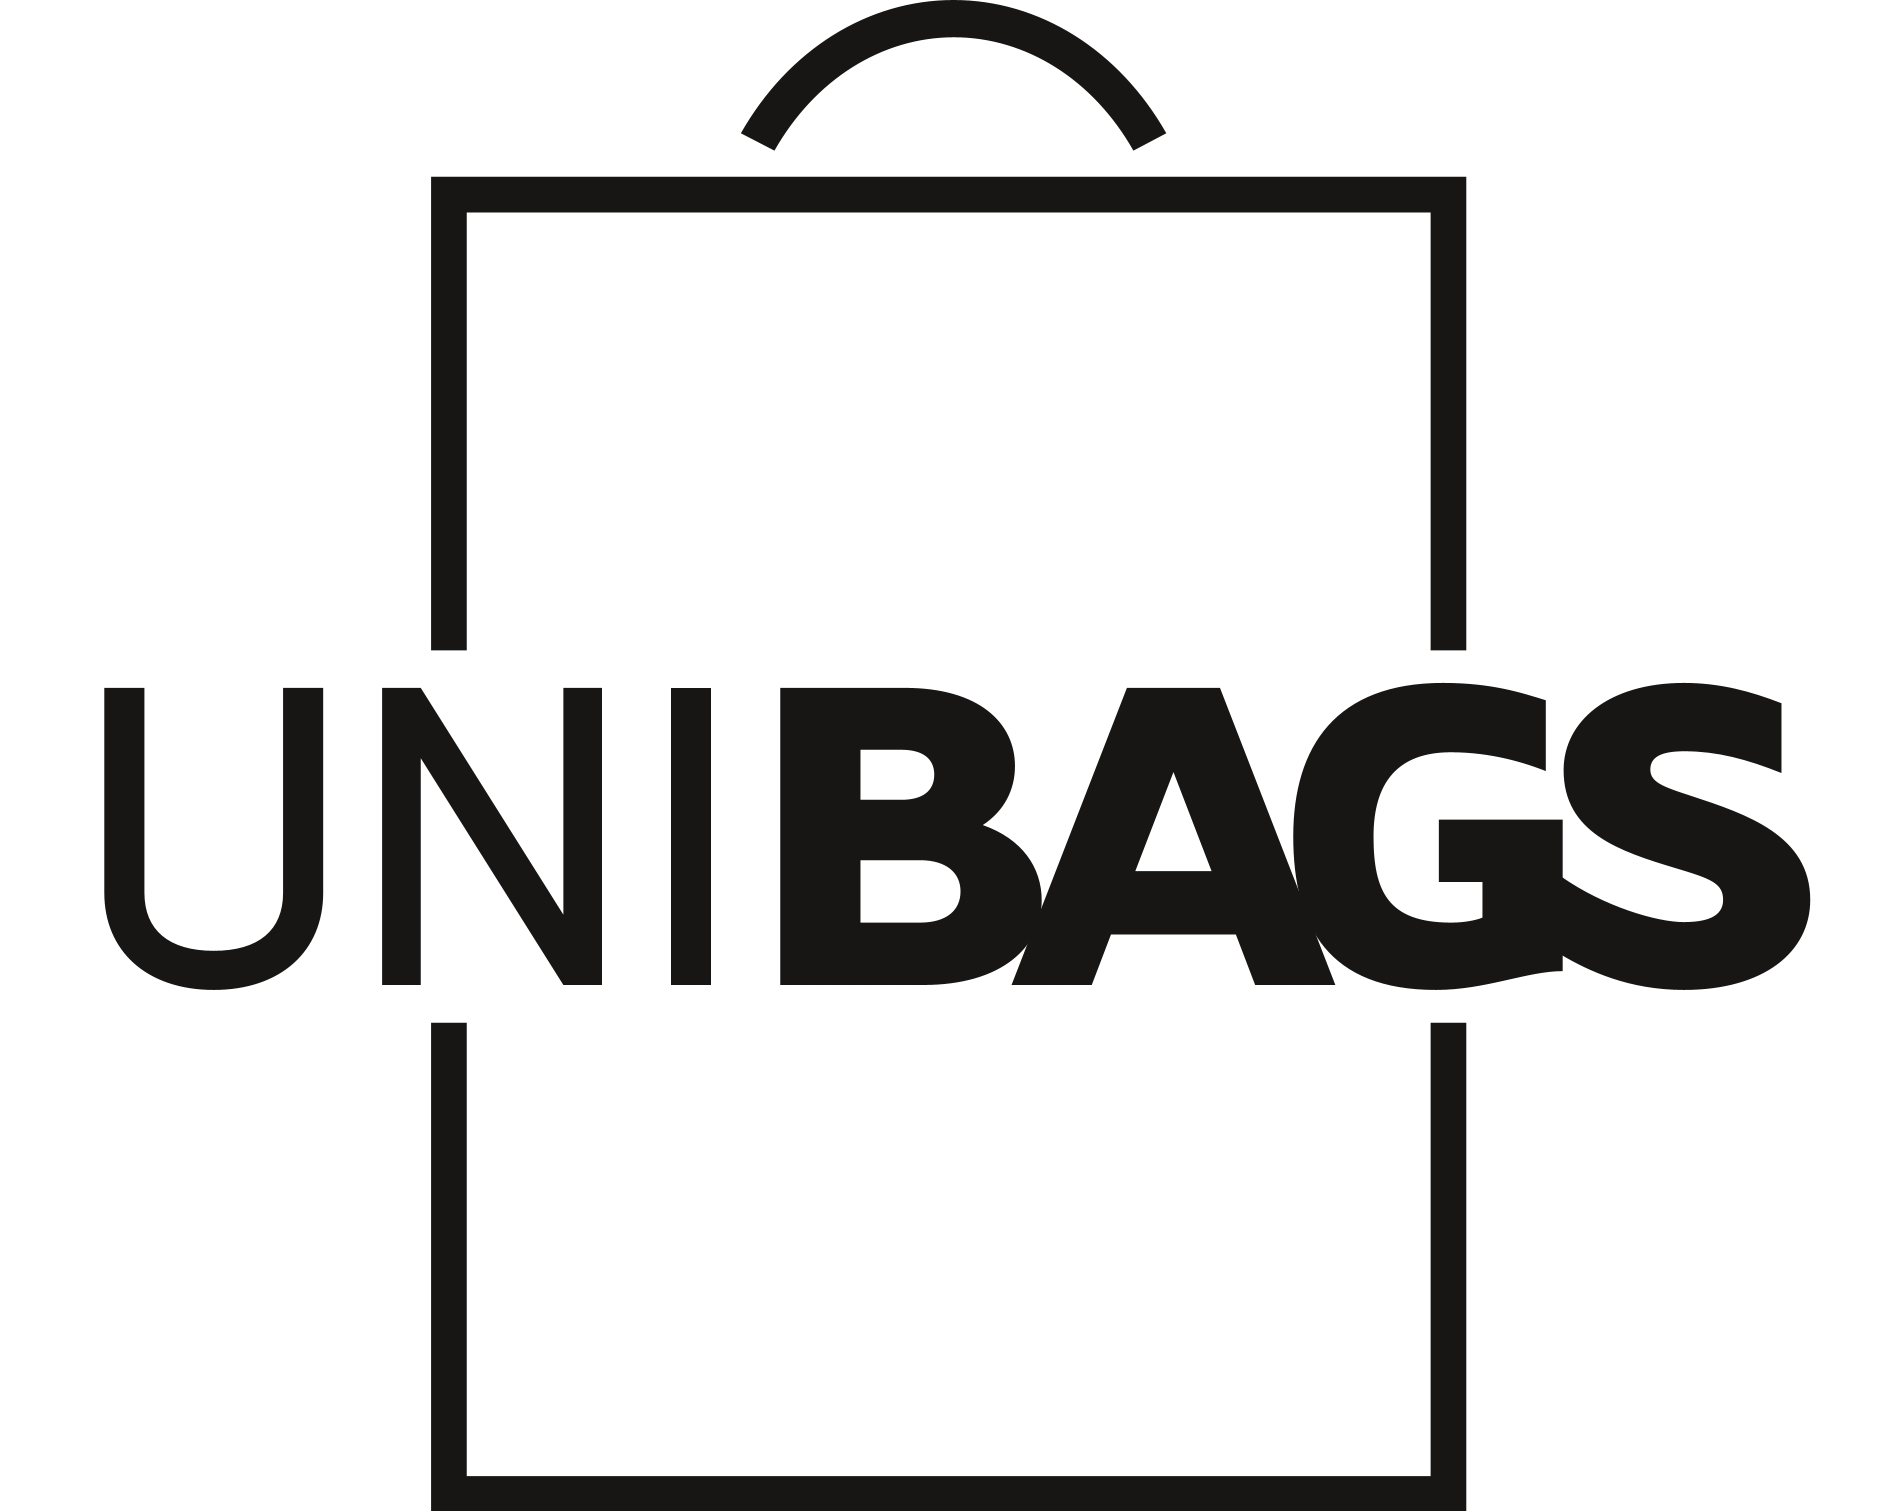 UNIBAGS